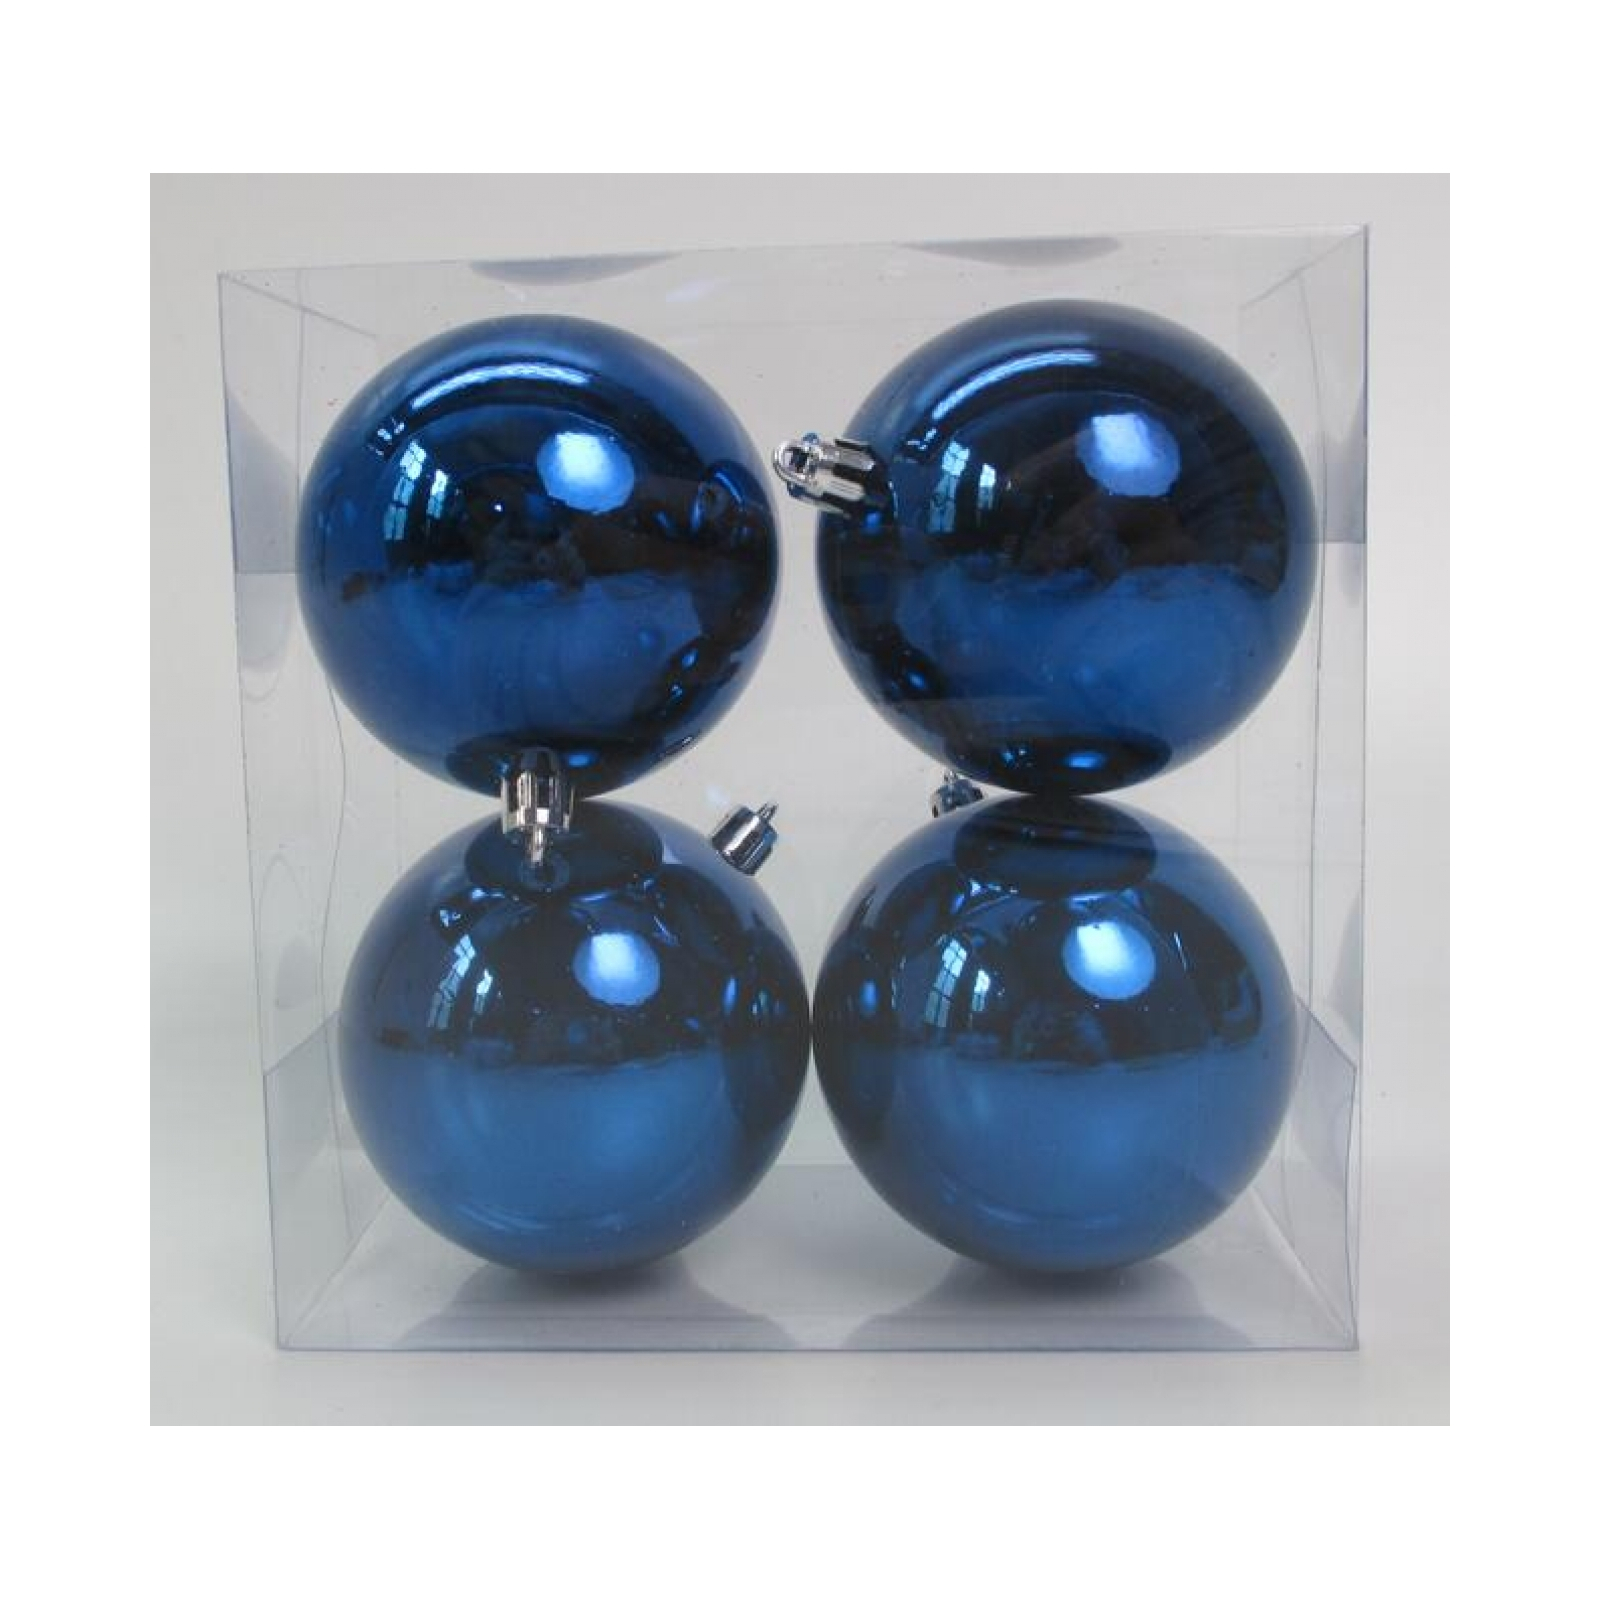 Ялинкова іграшка Novogod`ko набір куль пластик, 8см, 4 шт, синій глянець (974525)